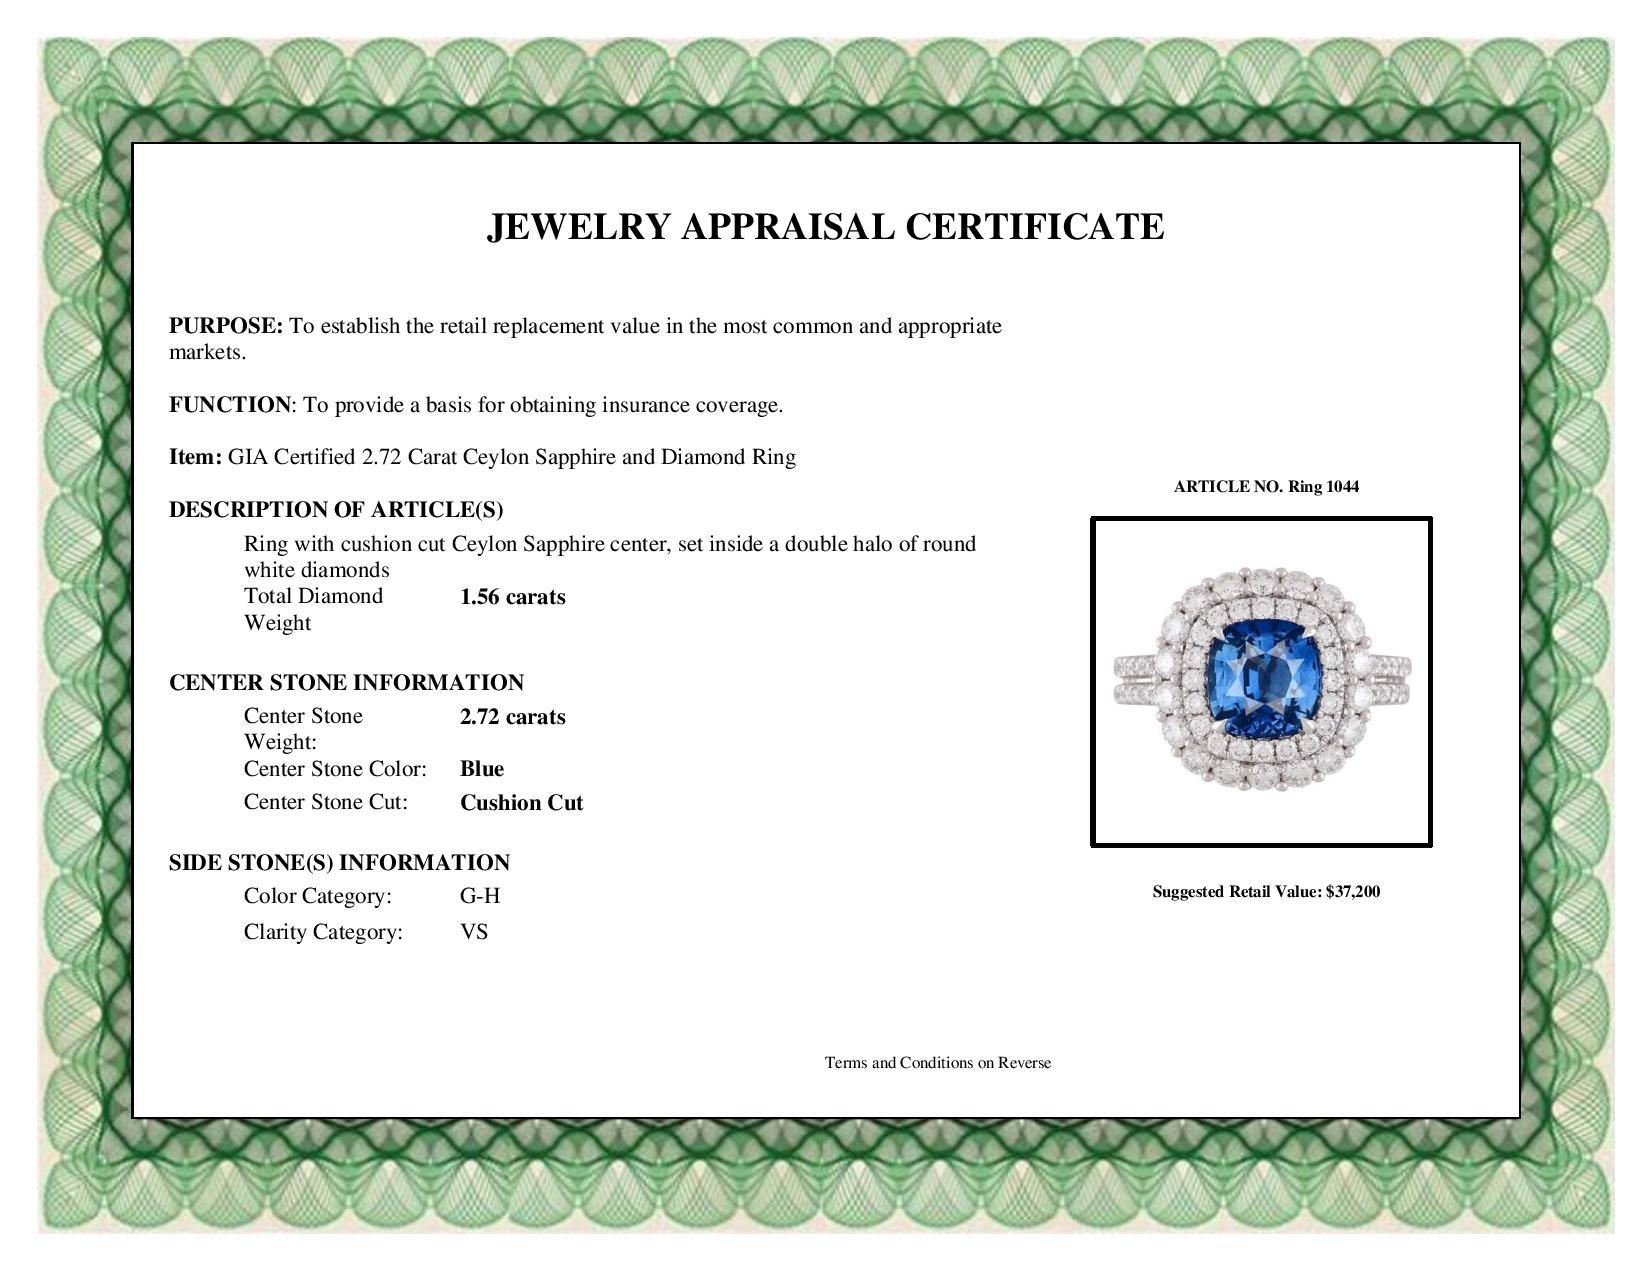 DiamondTown GIA Certified 2.72 Carat Ceylon Sapphire and Diamond Ring 2